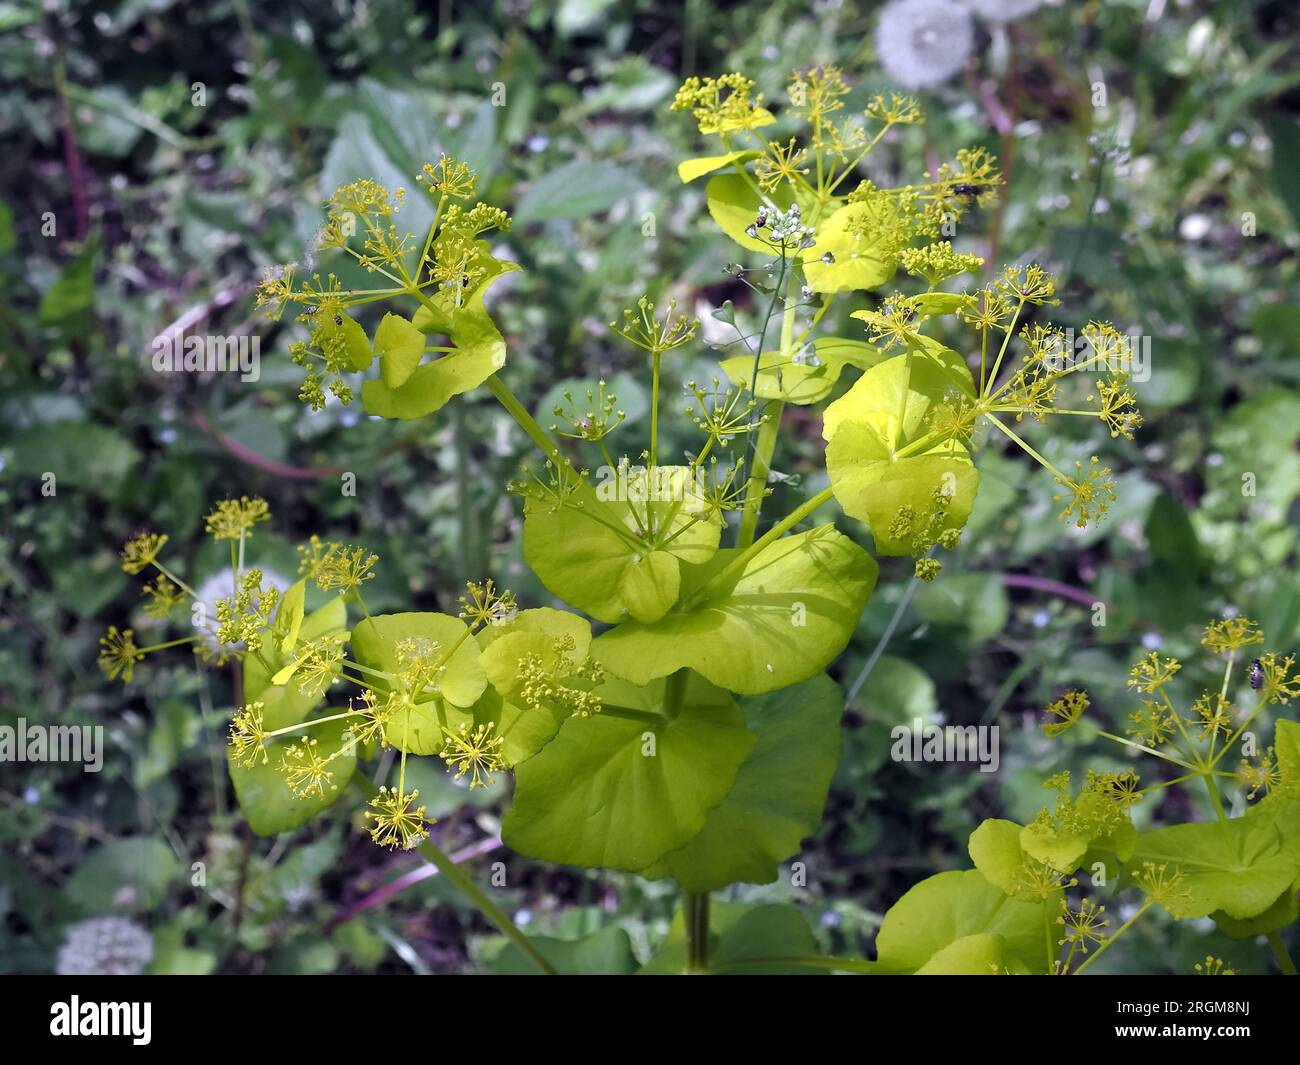 Smyrnium perfoliatum, sárgászöld őzsaláta, Budapest, Hungary, Magyarország, Europe Stock Photo